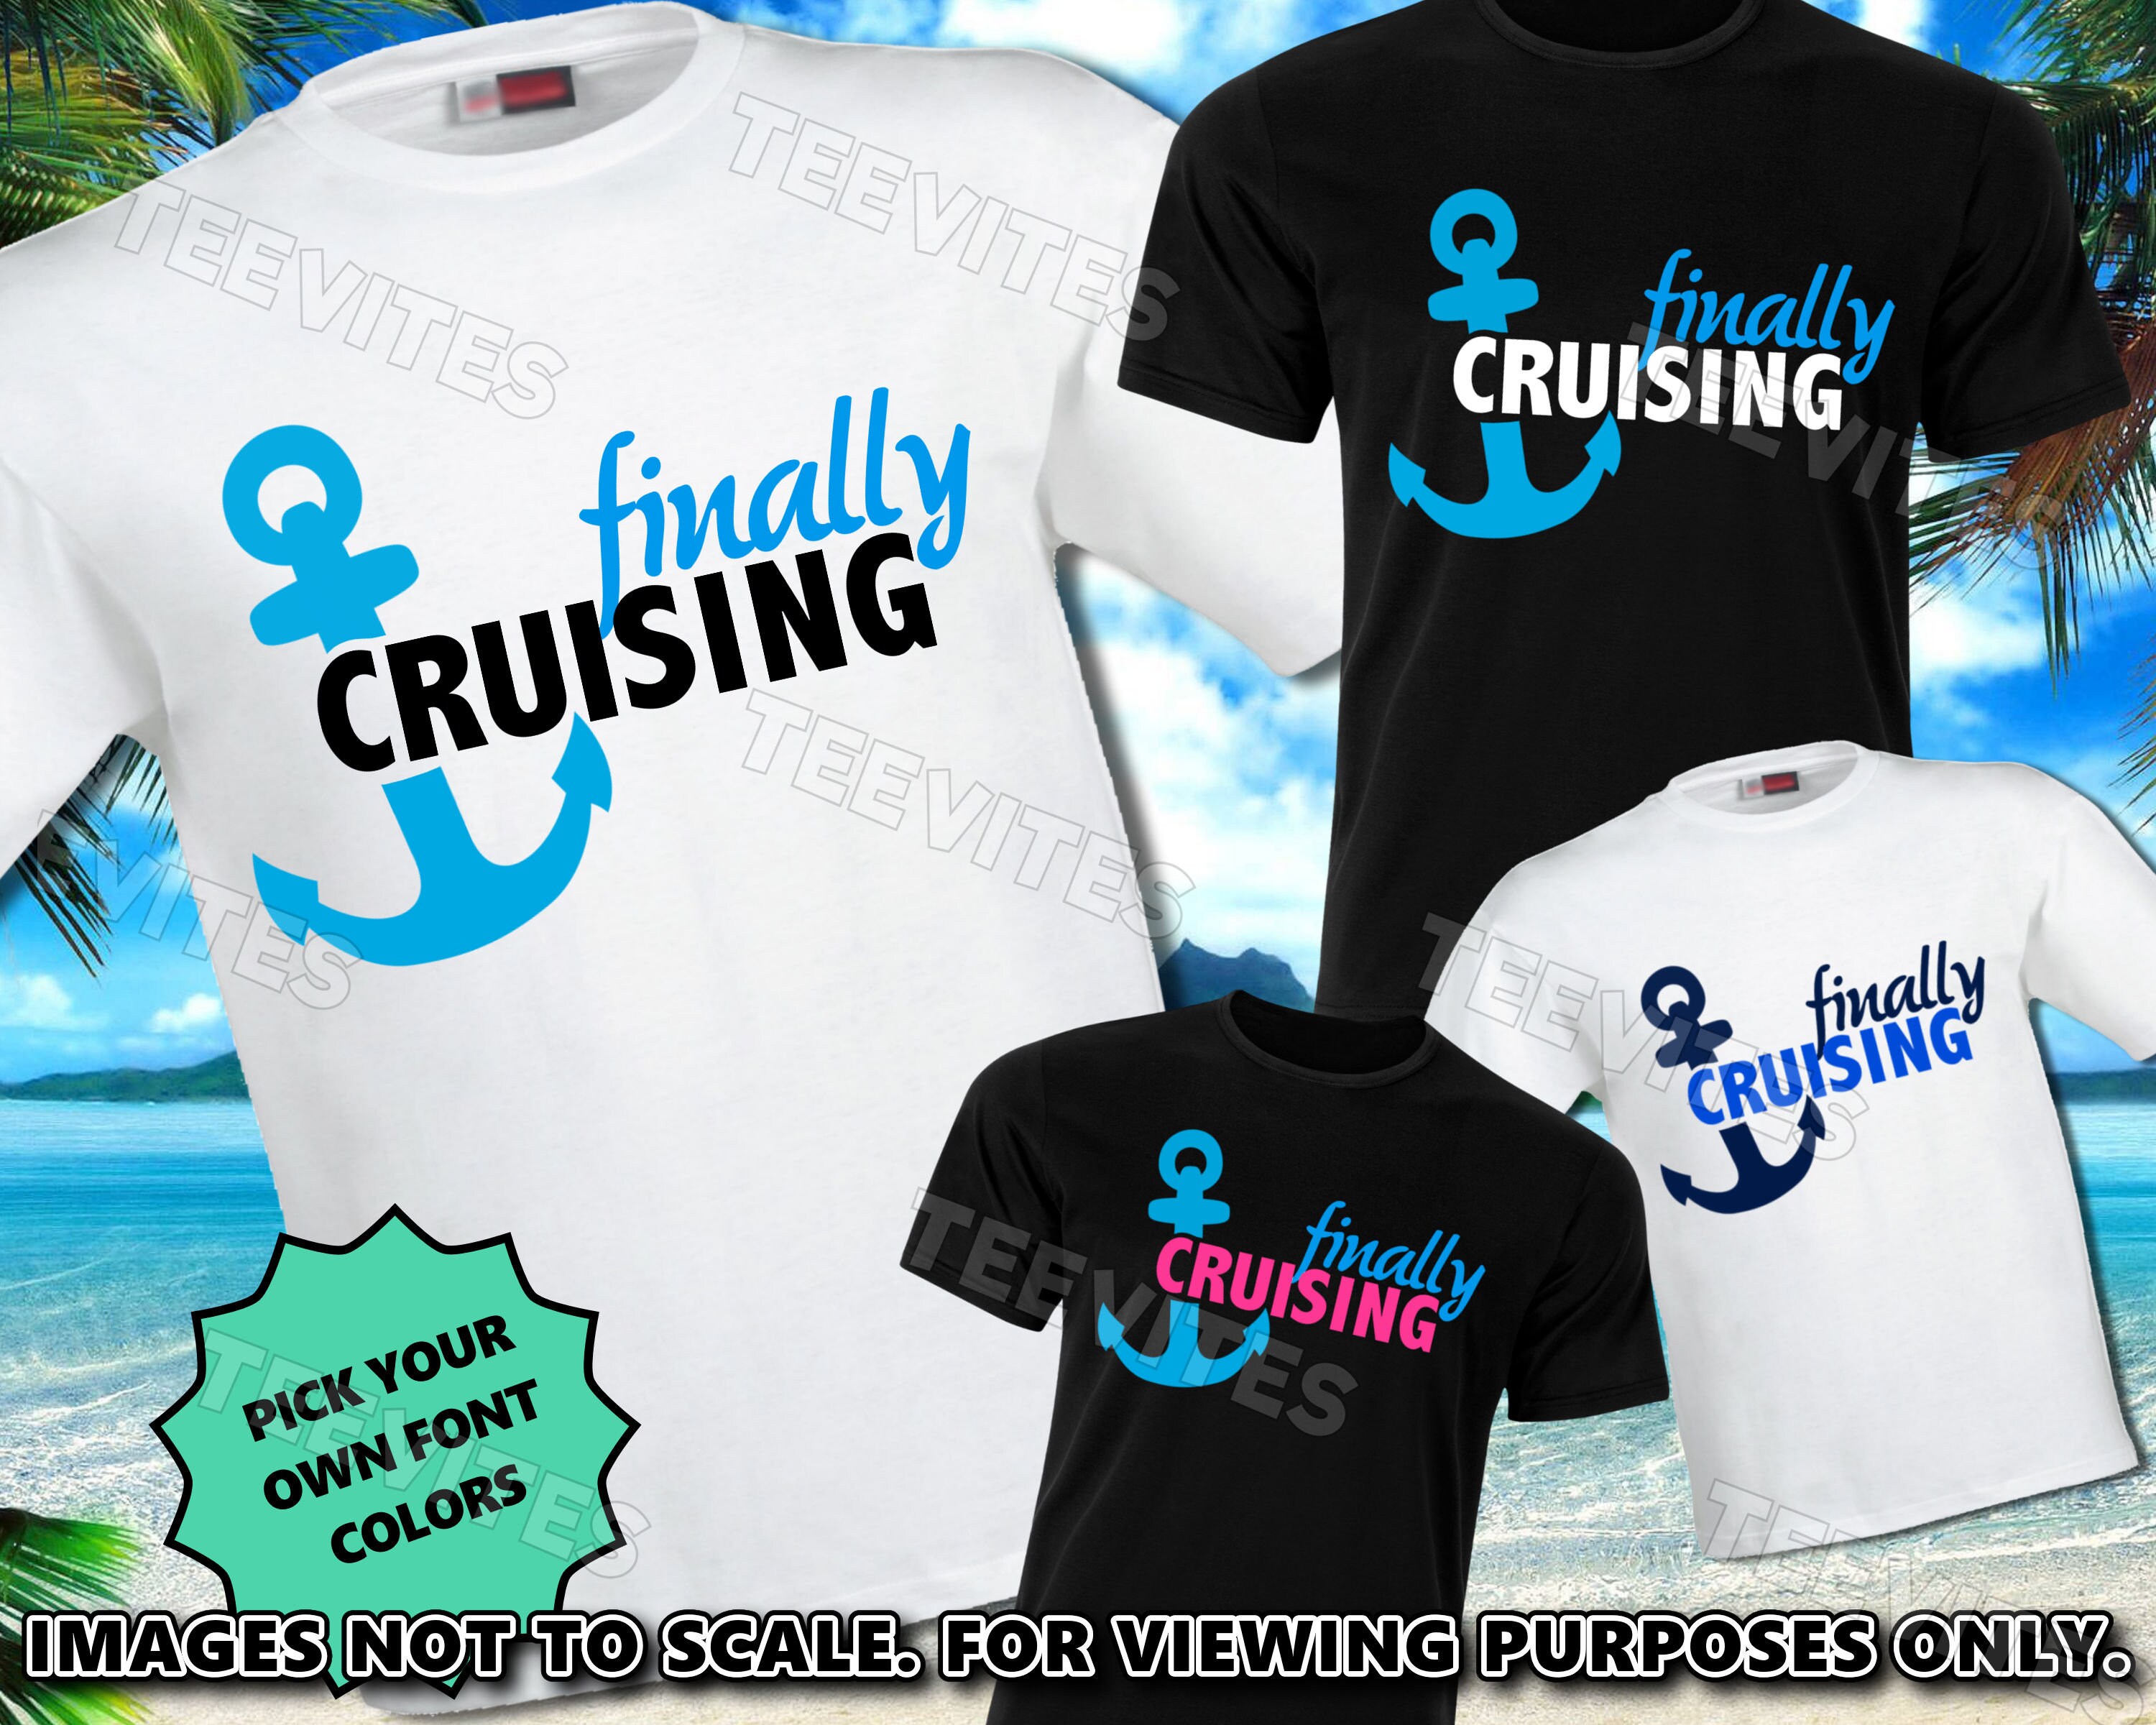 Hejse saltet sektor Finally Cruising T-shirt or Tank Top / Cruise / Cruising / - Etsy